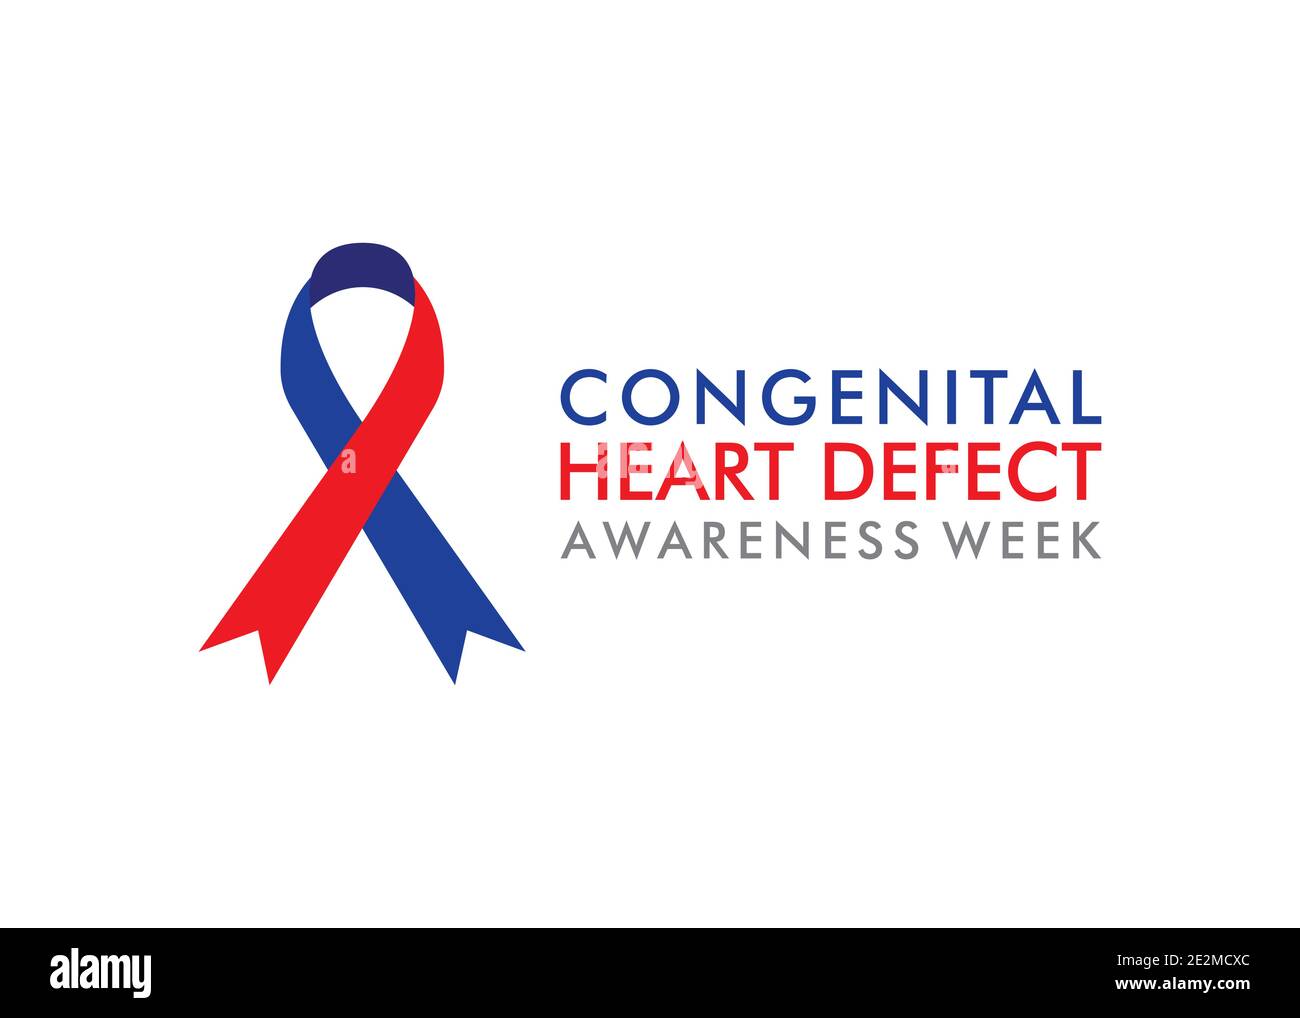 vector illustration of congenital heart defect awareness week design